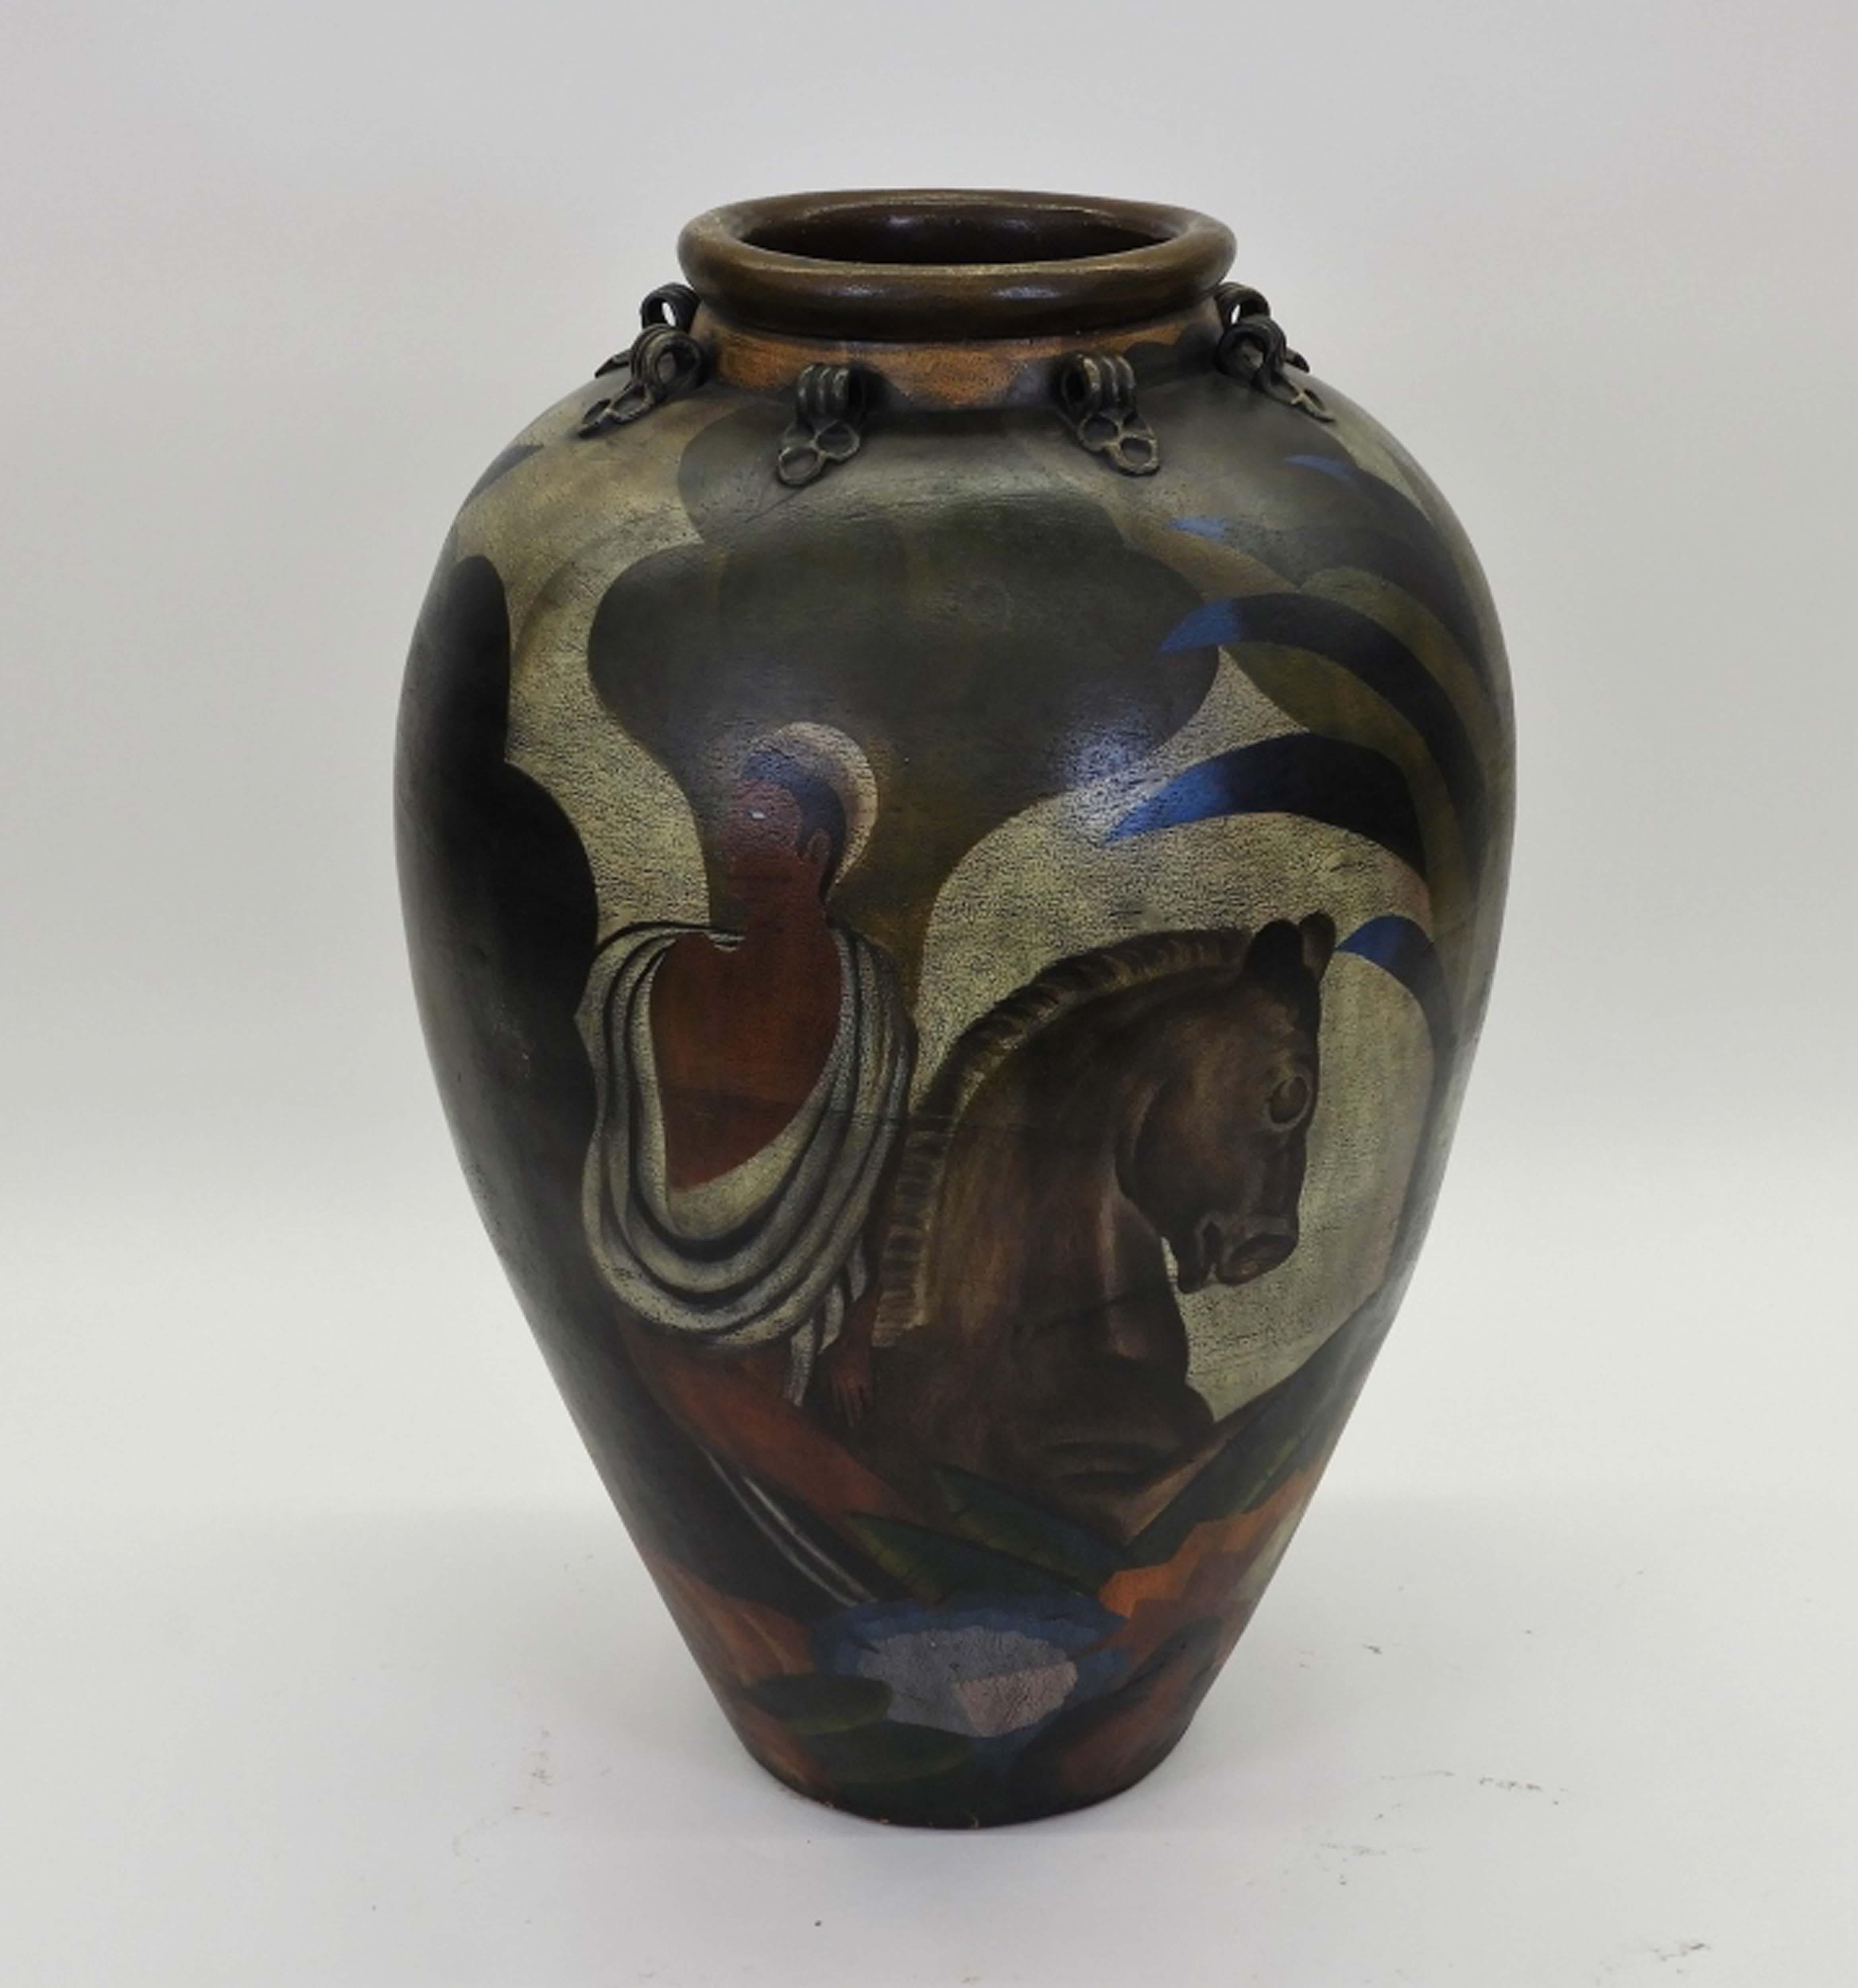 Il s'agit d'un vase massif et très lourd en poterie faite à la main et peinte à la main, créé aux États-Unis au XXe siècle
Il a une forme de balustre et est décoré d'une scène de paysage représentant un homme chevauchant un cheval. 
Technique